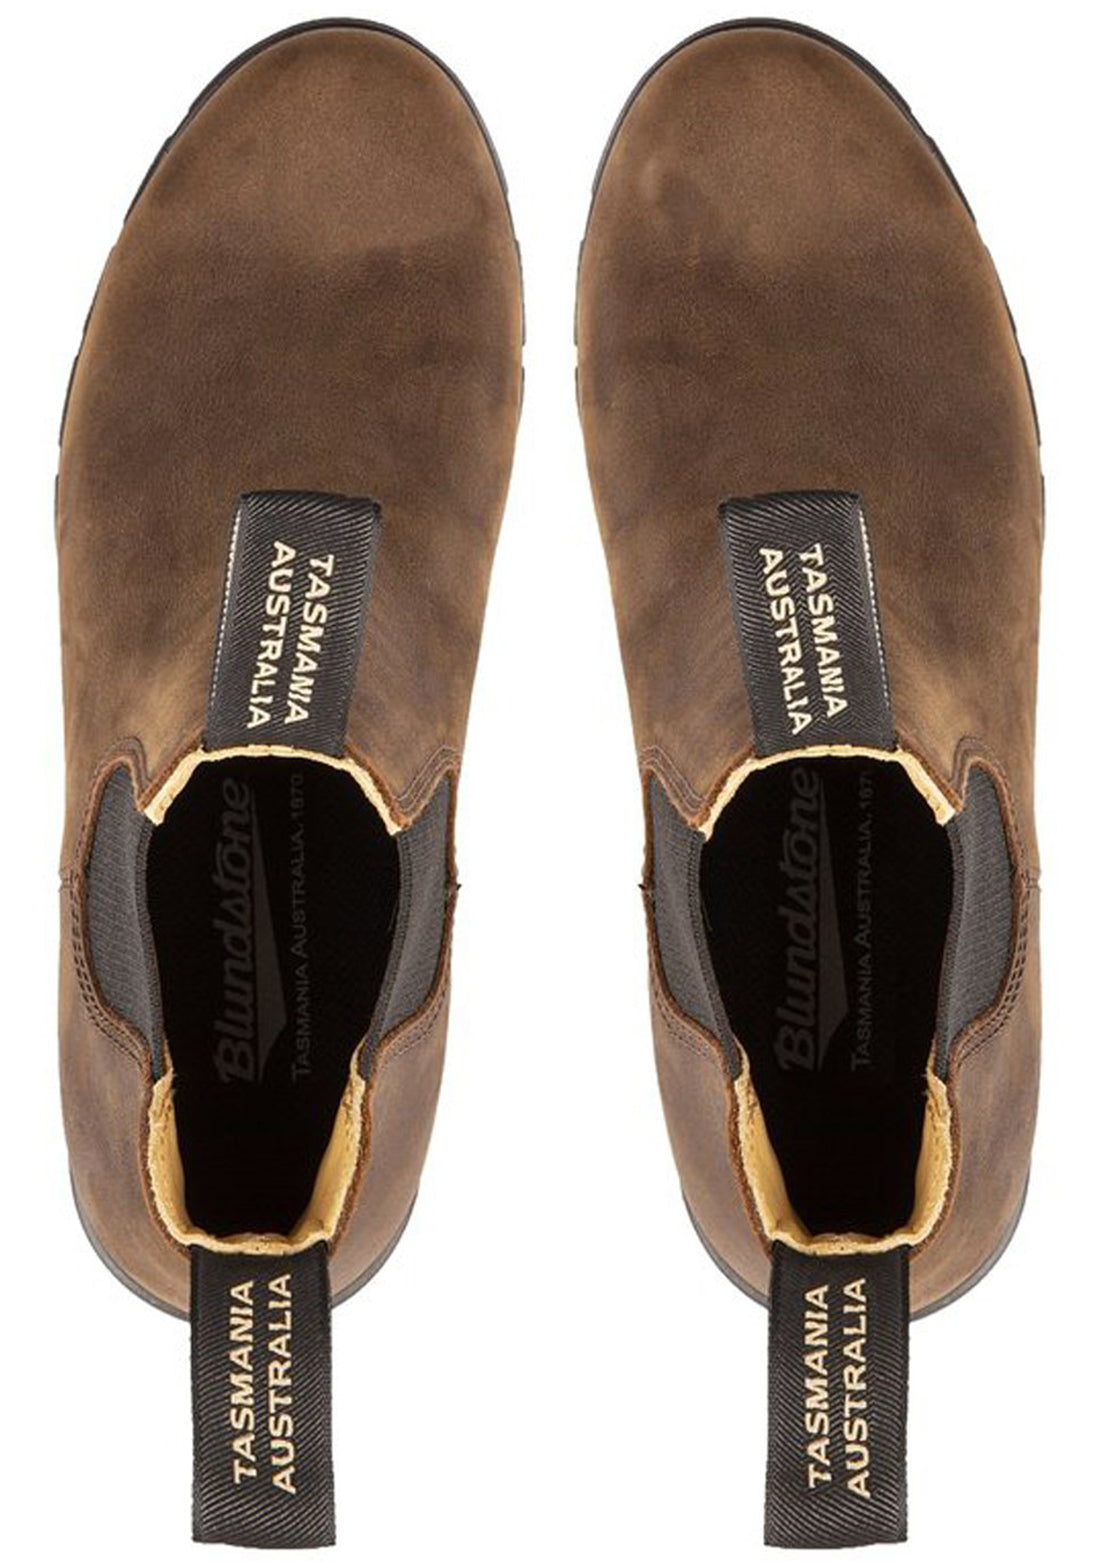 Blundstone Women’s 1673 Series Heel Boots Antic Brown